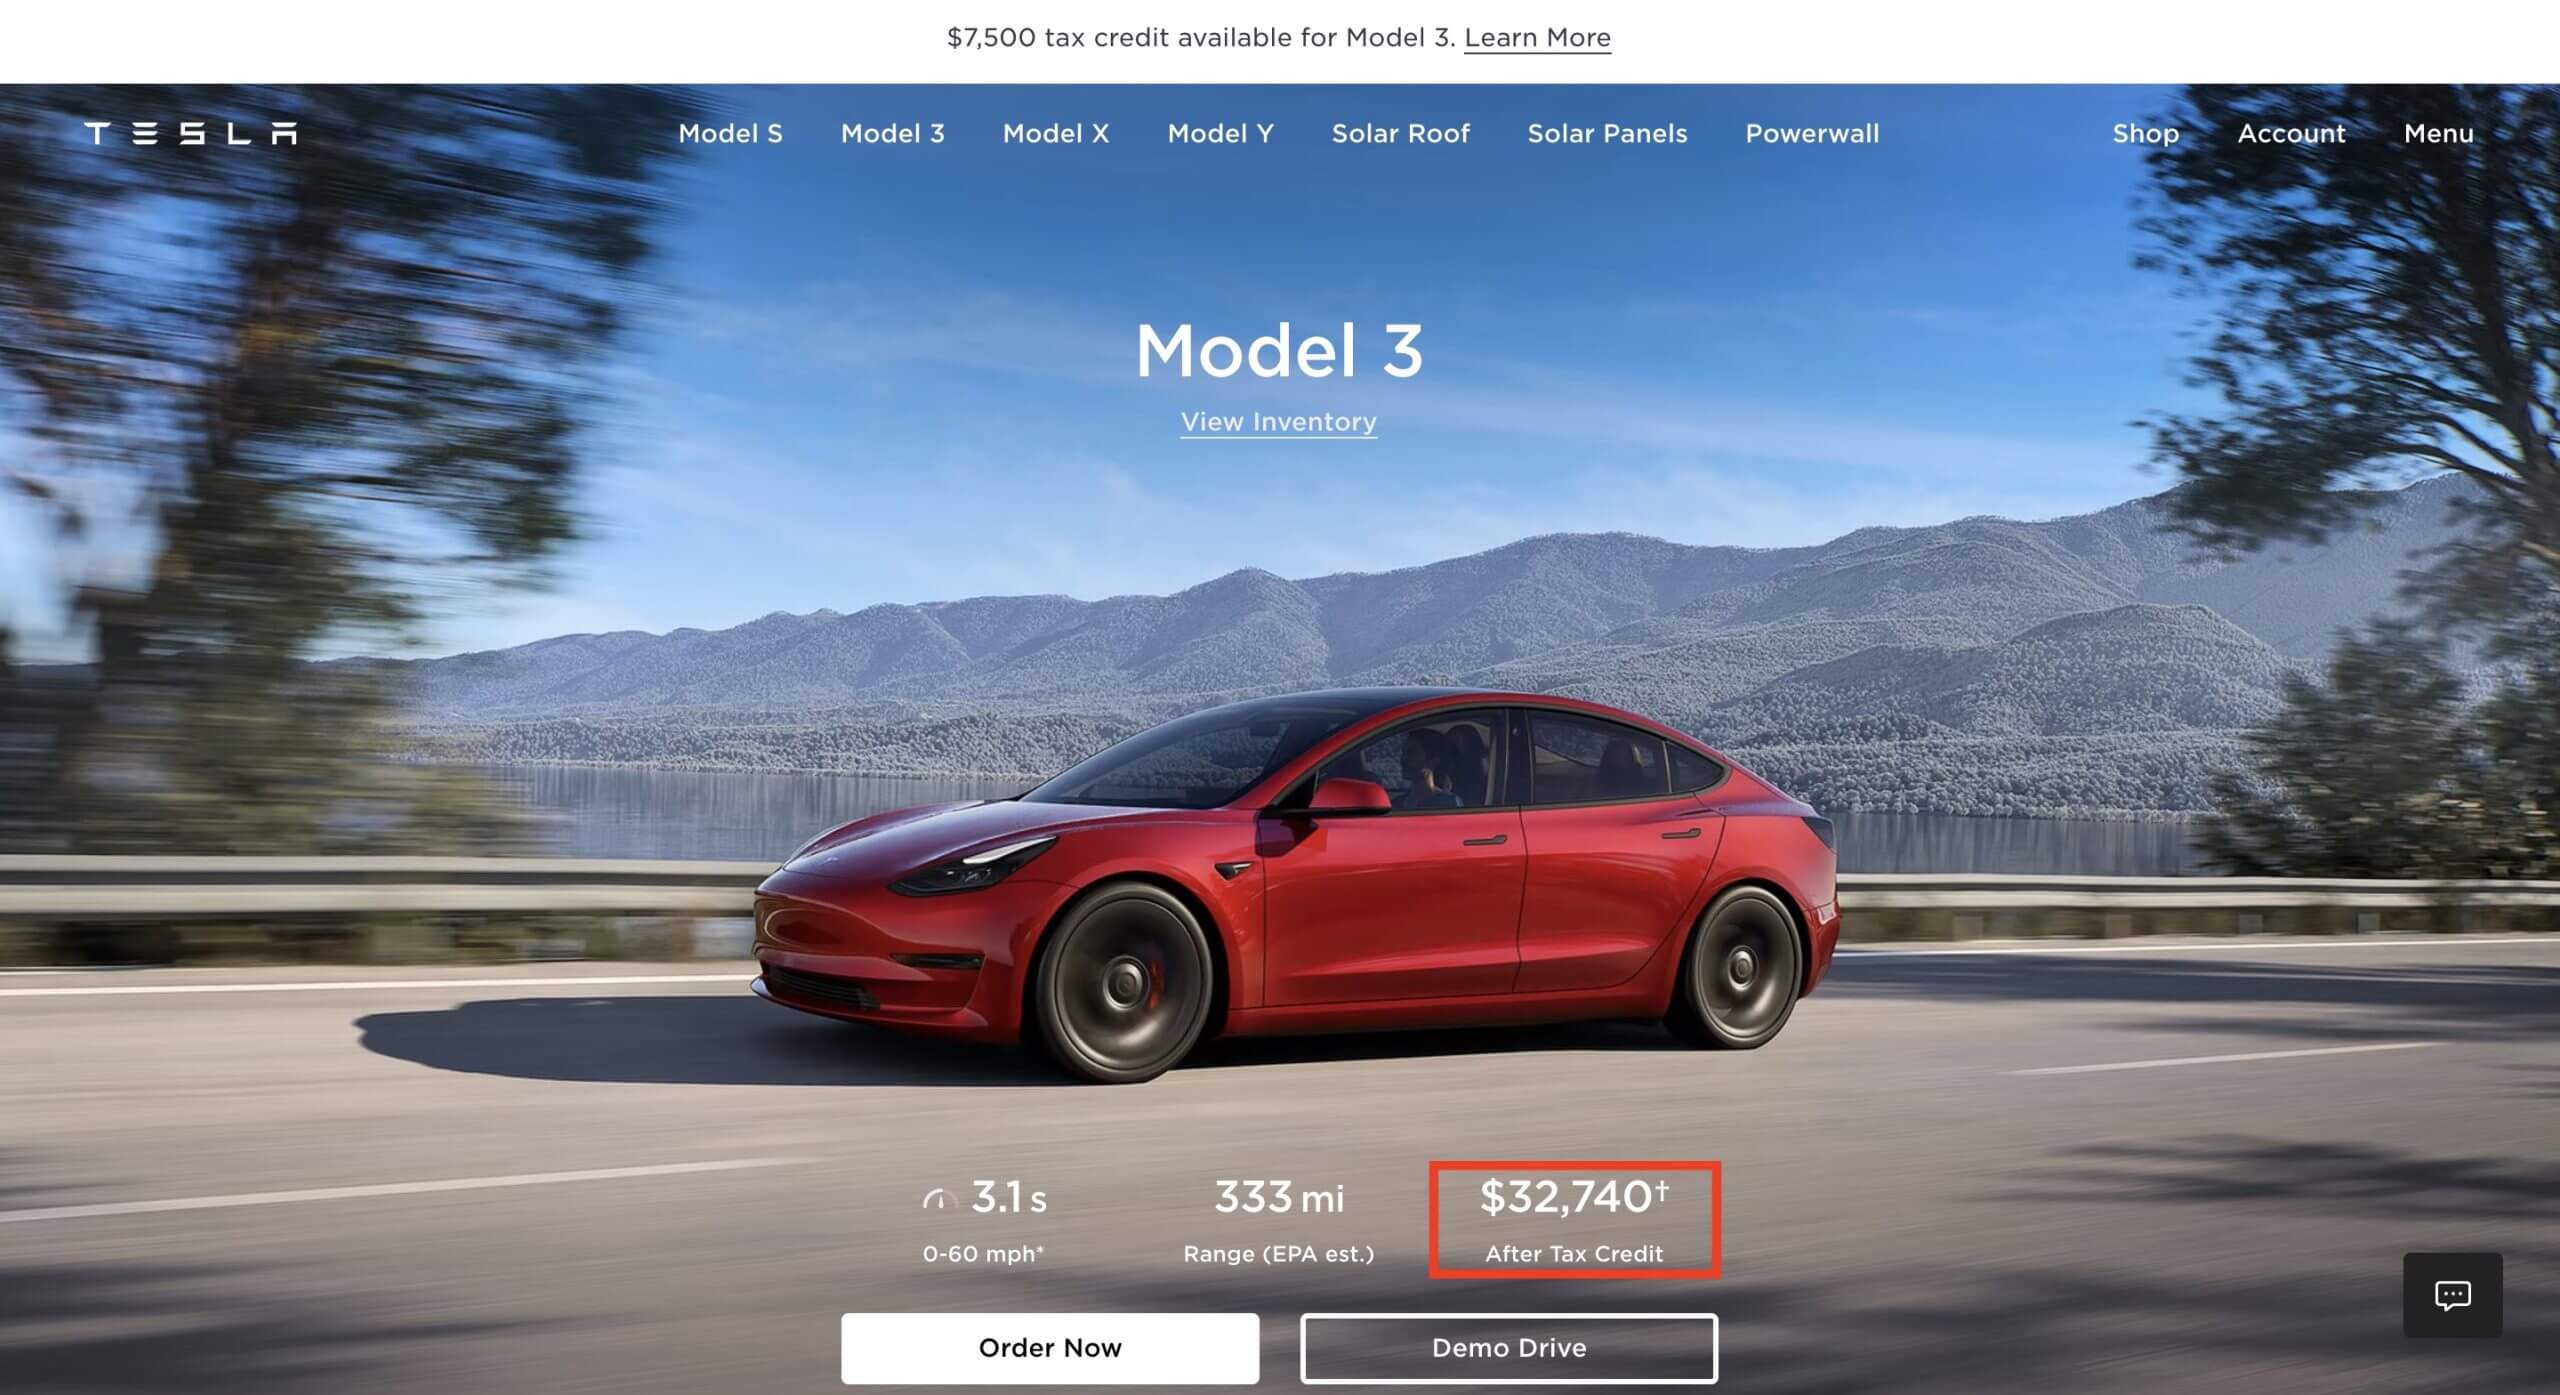 टेस्ला ने मॉडल 3 और मॉडल वाई की इरा-समायोजित कीमतों को बढ़ावा देना शुरू किया